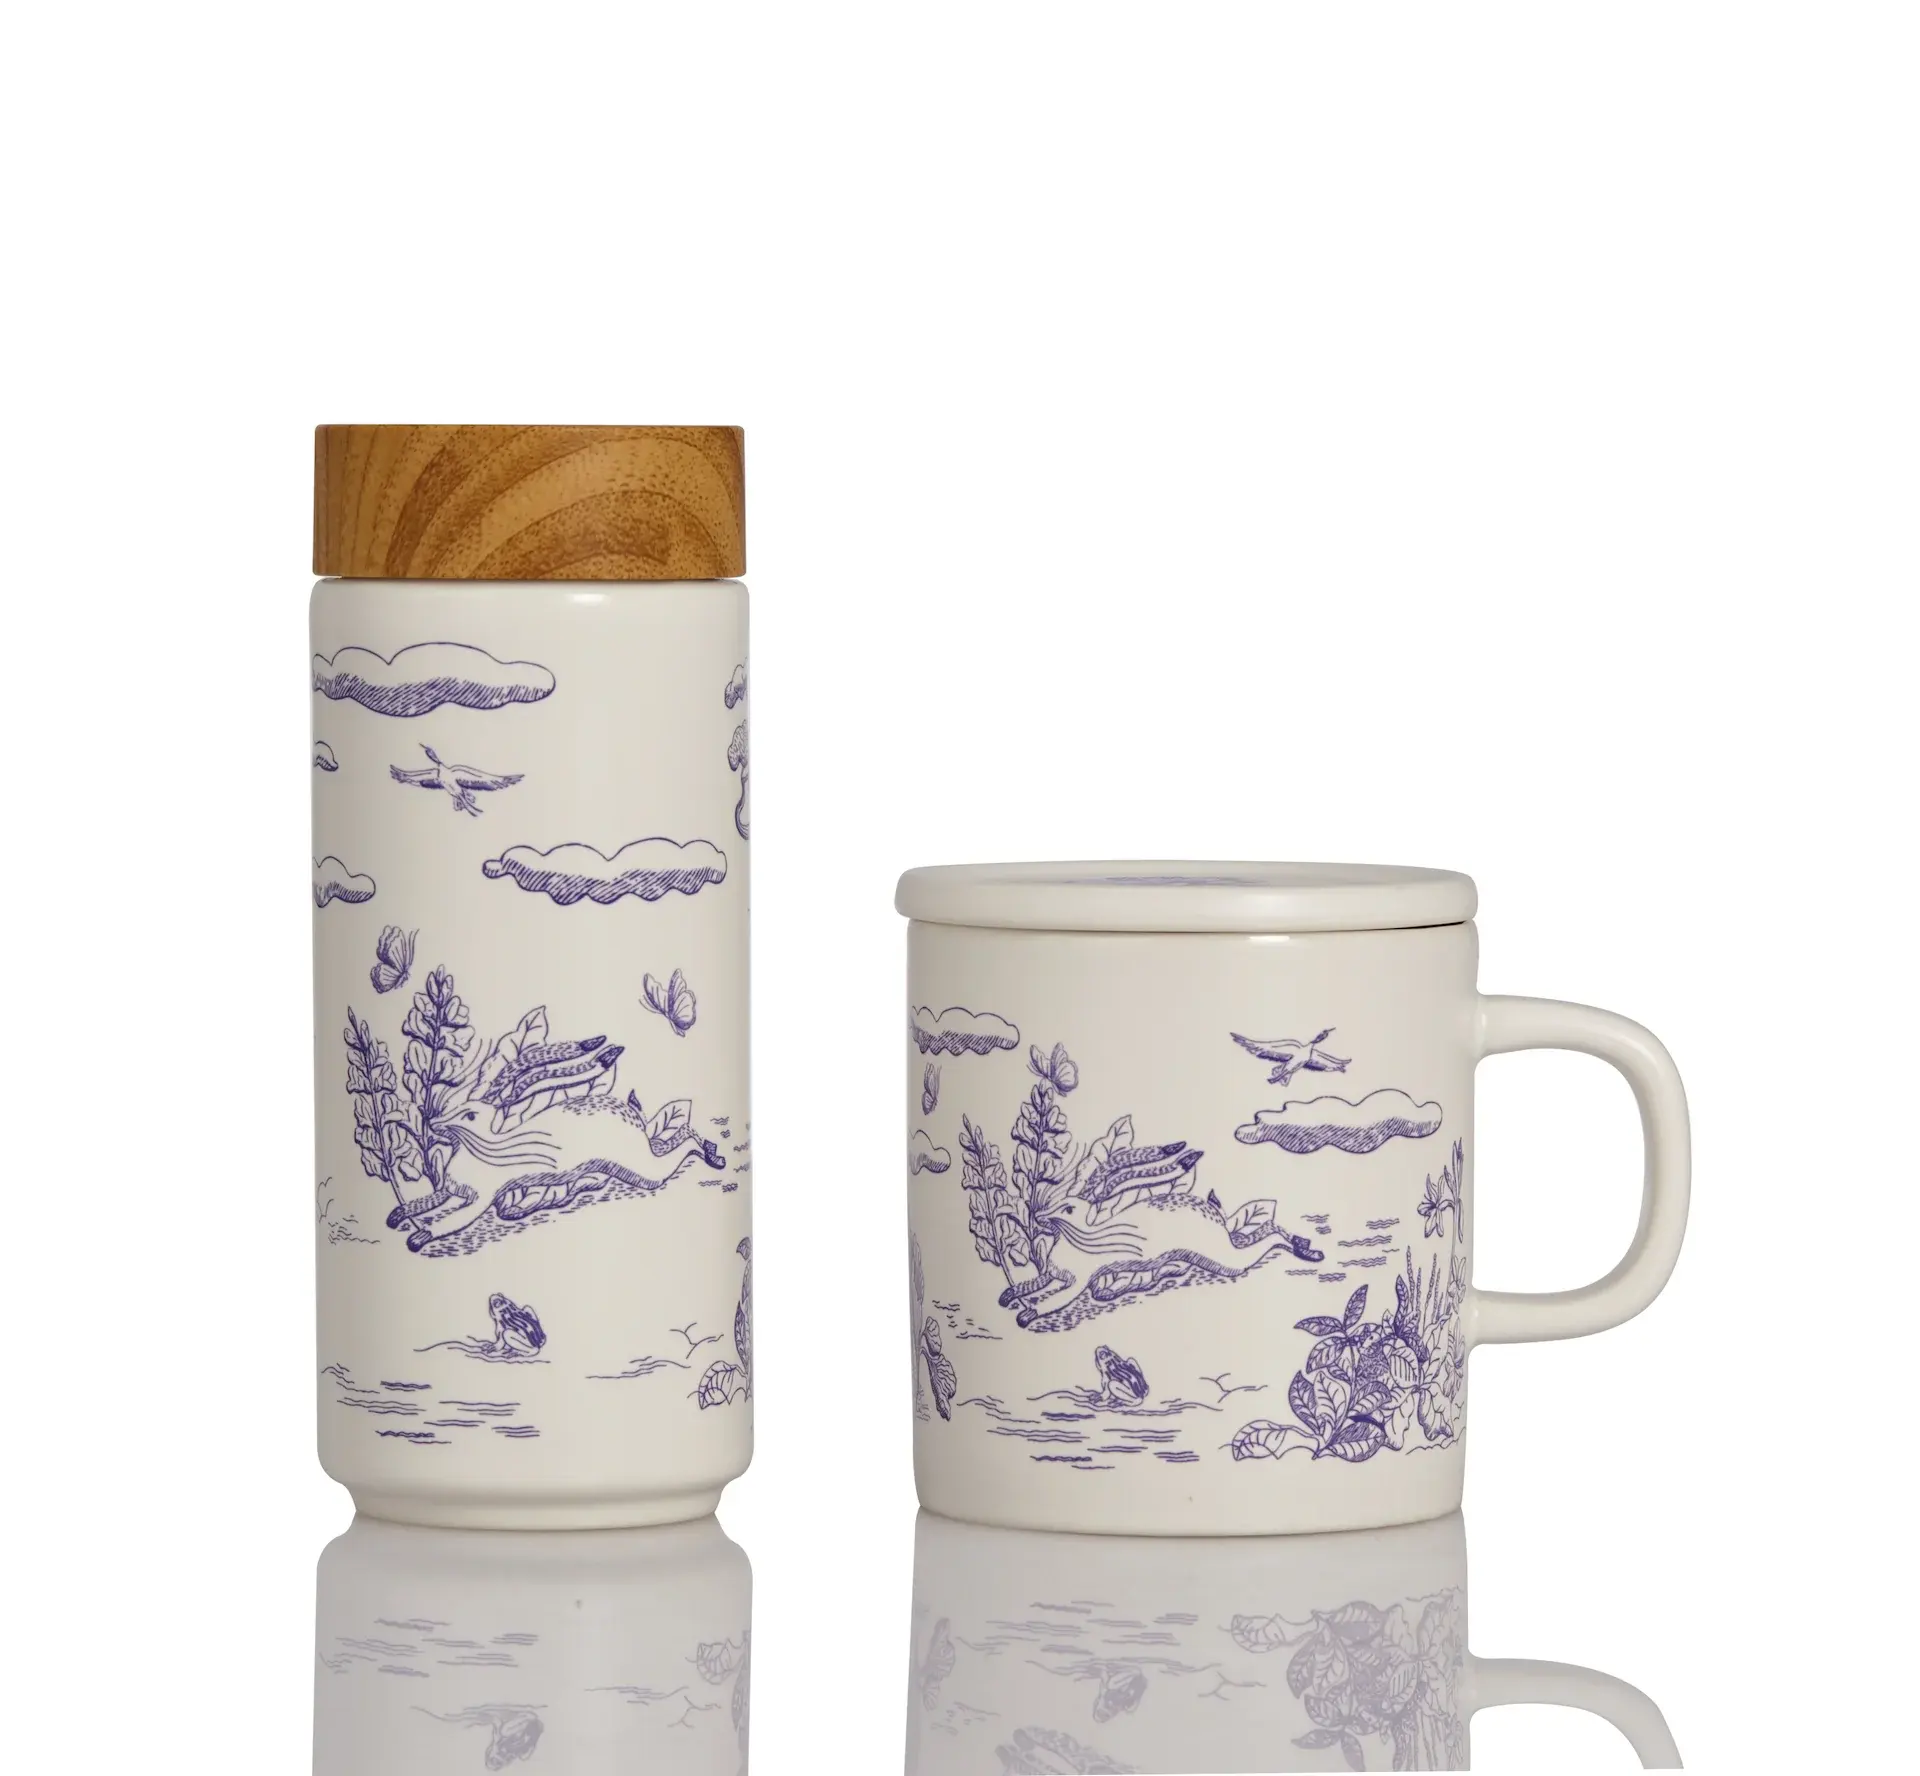 Acera Liven Set Mug & Mug perjalanan, taman ajaib dibuat dengan desain minimalis yang indah